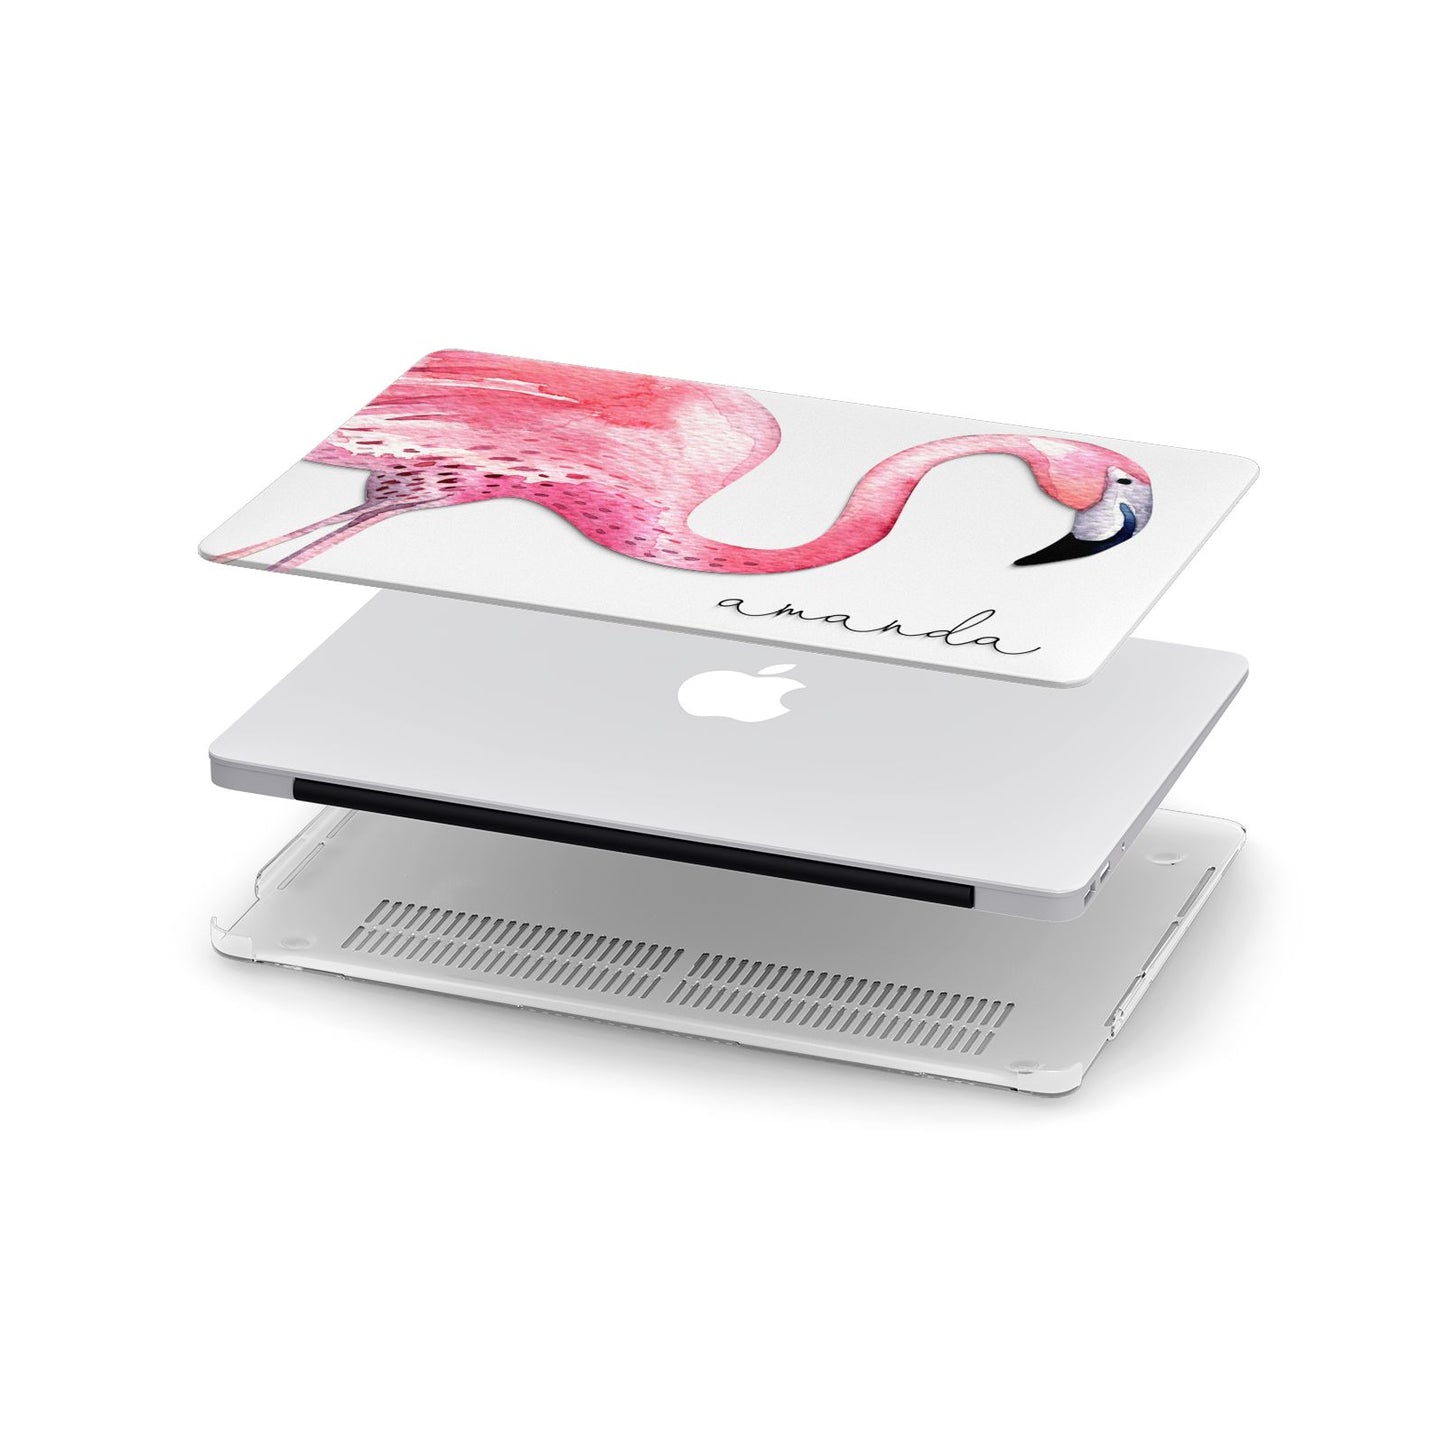 Personalised Flamingo Apple MacBook Case in Detail